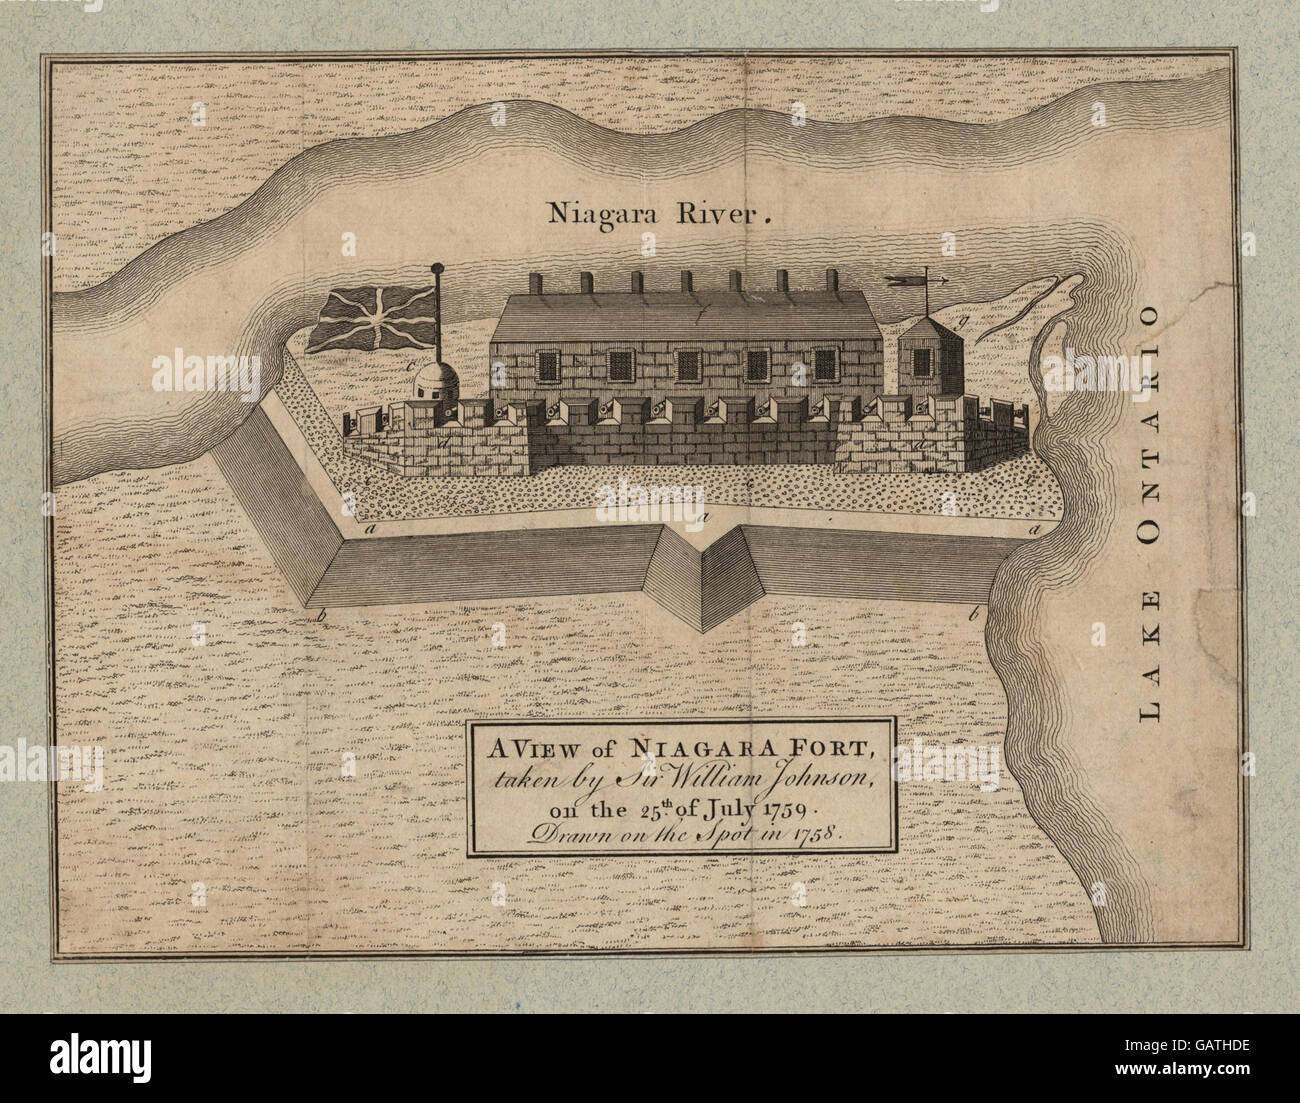 Una vista di Niagara Fort, presi da Sir William Johnson, il 25 luglio 1759, disegnato in loco nel 1758 ( NYPG94-F42-419821) Foto Stock